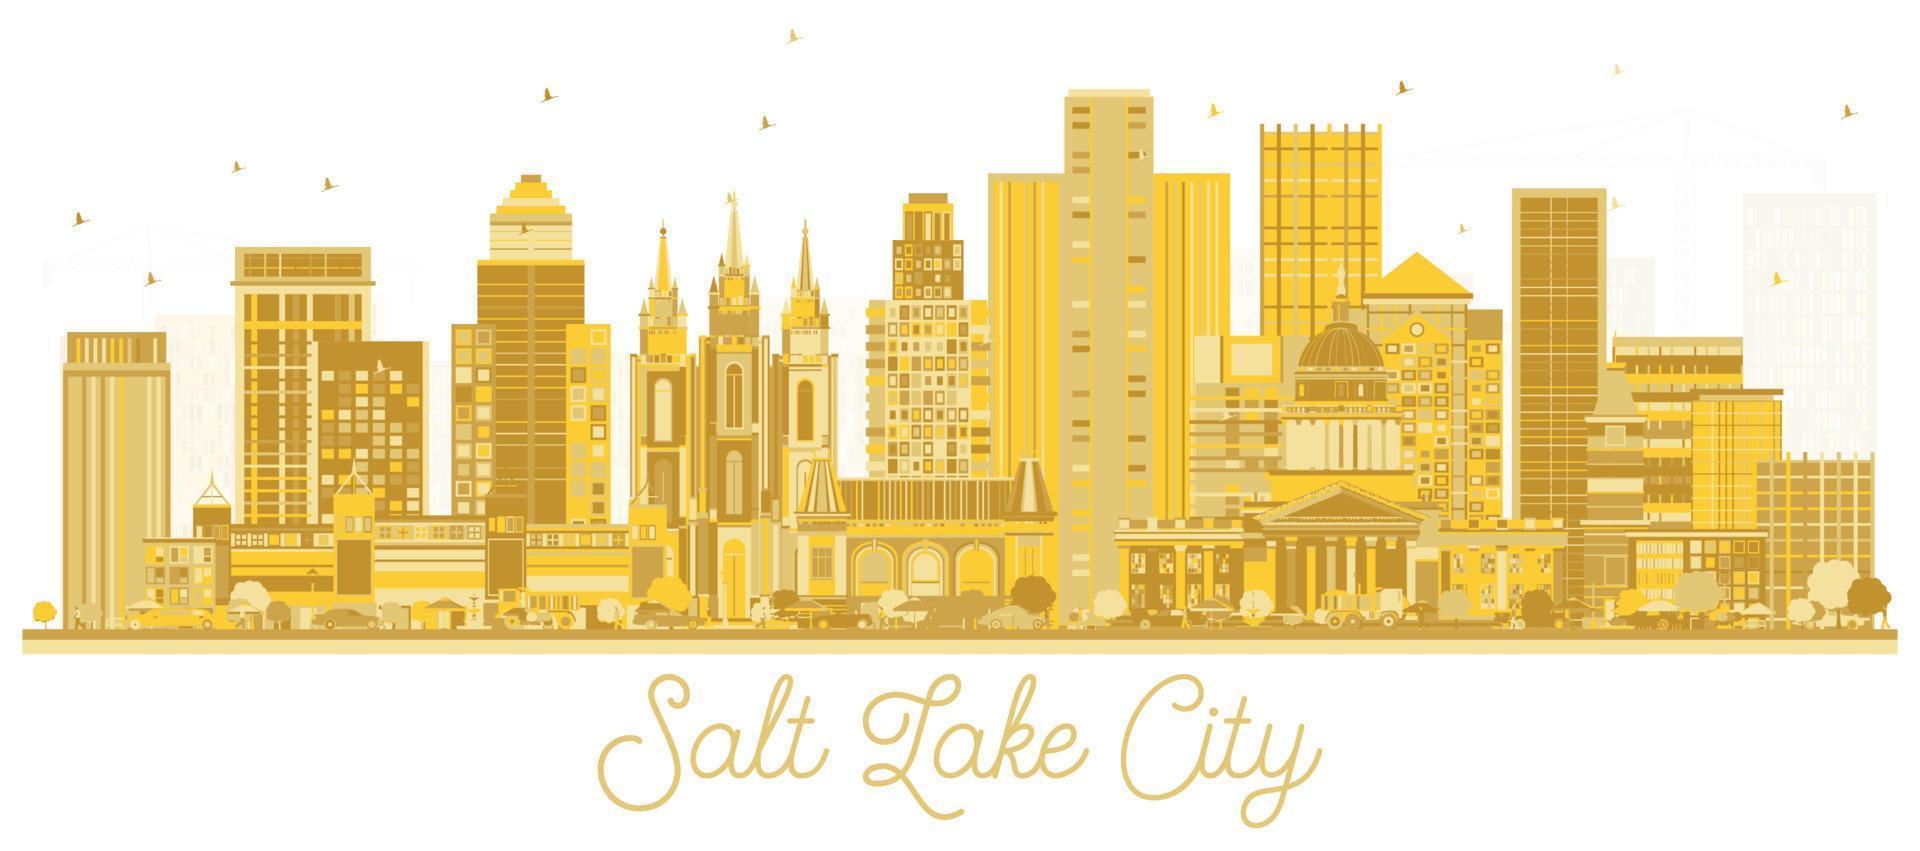 skyline de la ville de salt lake city utah avec des bâtiments dorés isolés sur blanc. vecteur